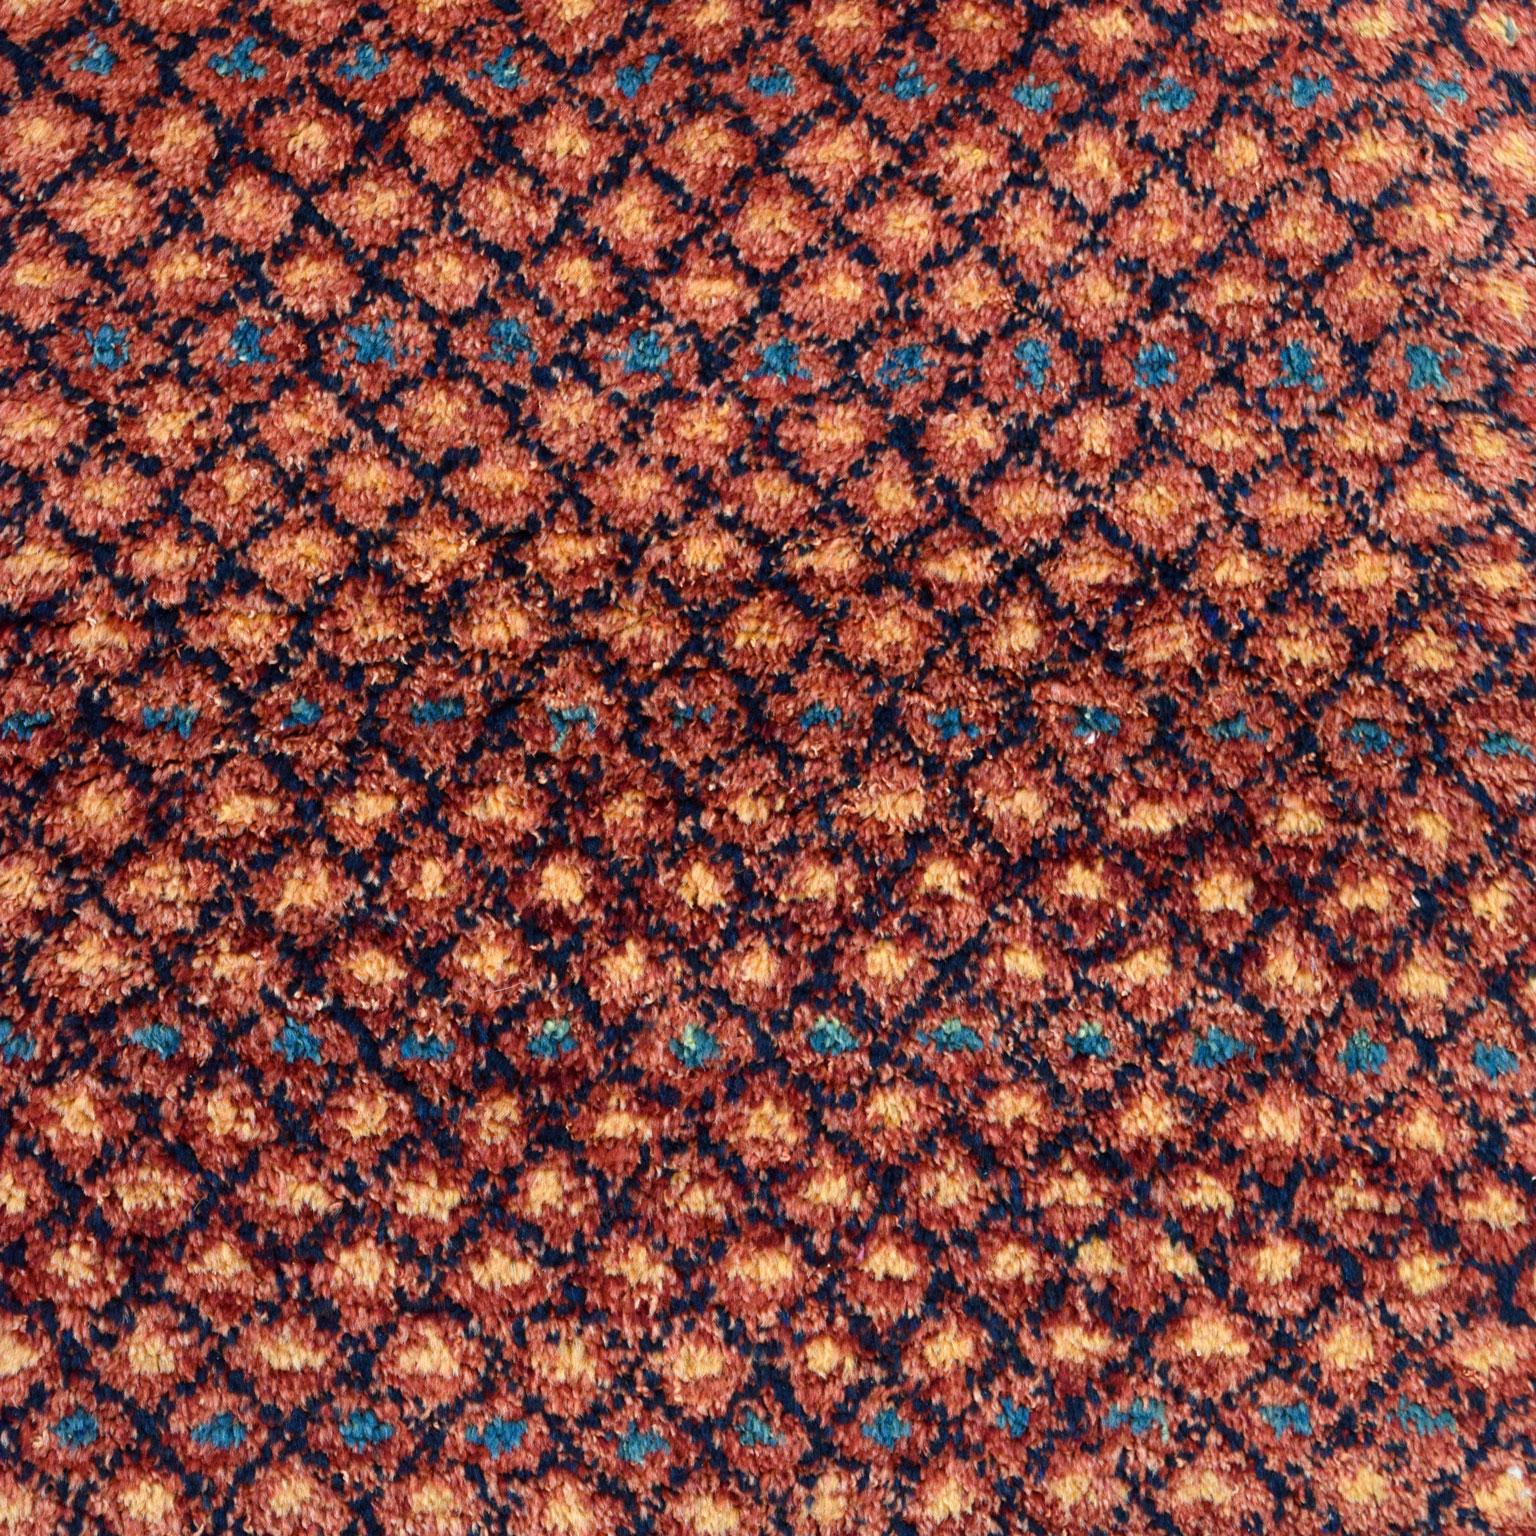 This Persian Gabbeh tribal rug measures 2'6